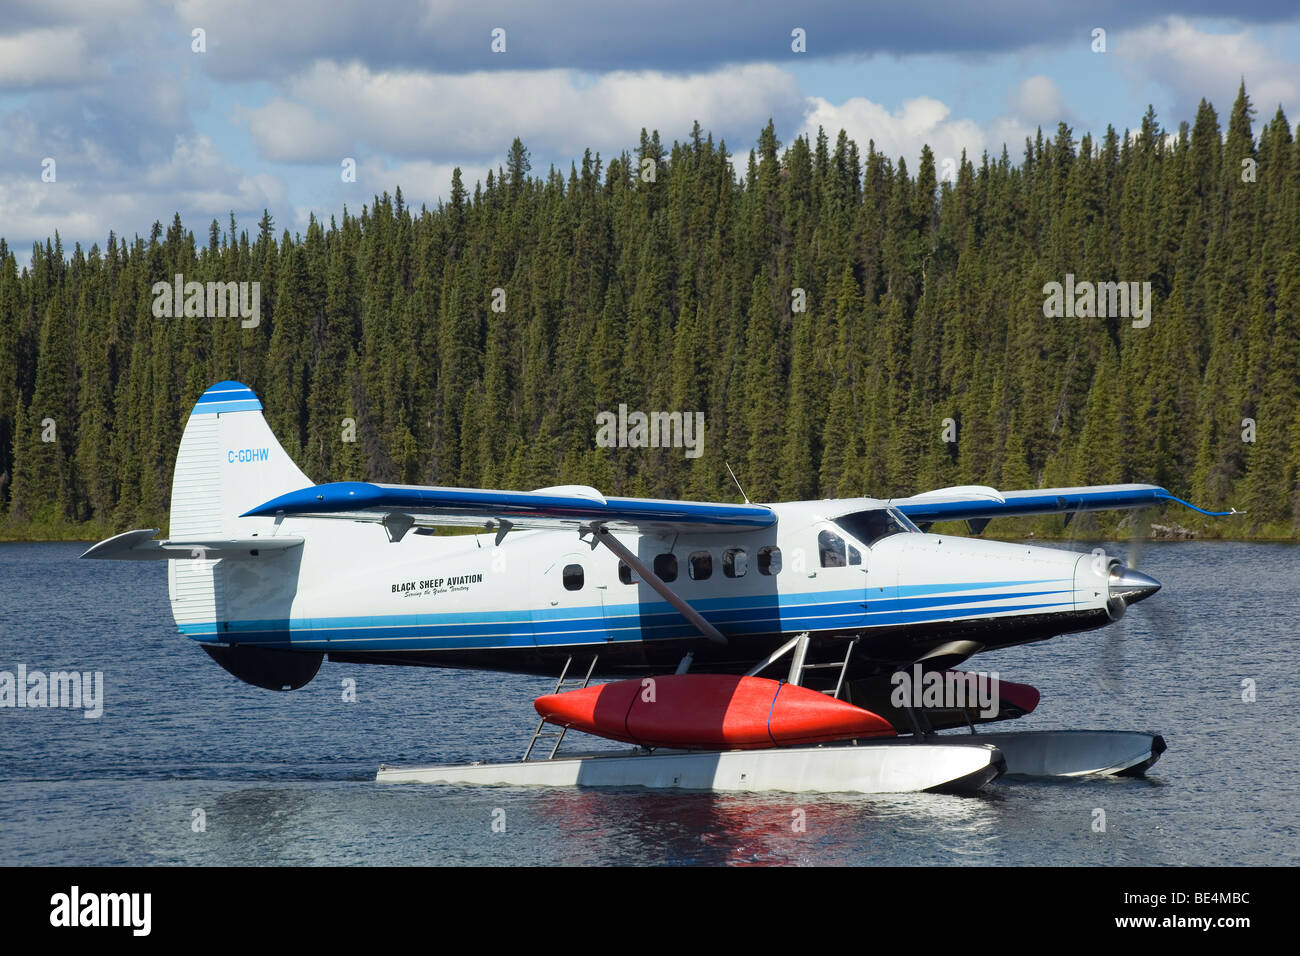 Rollen de Havilland Canada DHC-3 Otter, Wasserflugzeug, Kanu, Schwimmen, Buschflugzeug, Karibu Seen, oben Liard River, Yukon T gebunden Stockfoto